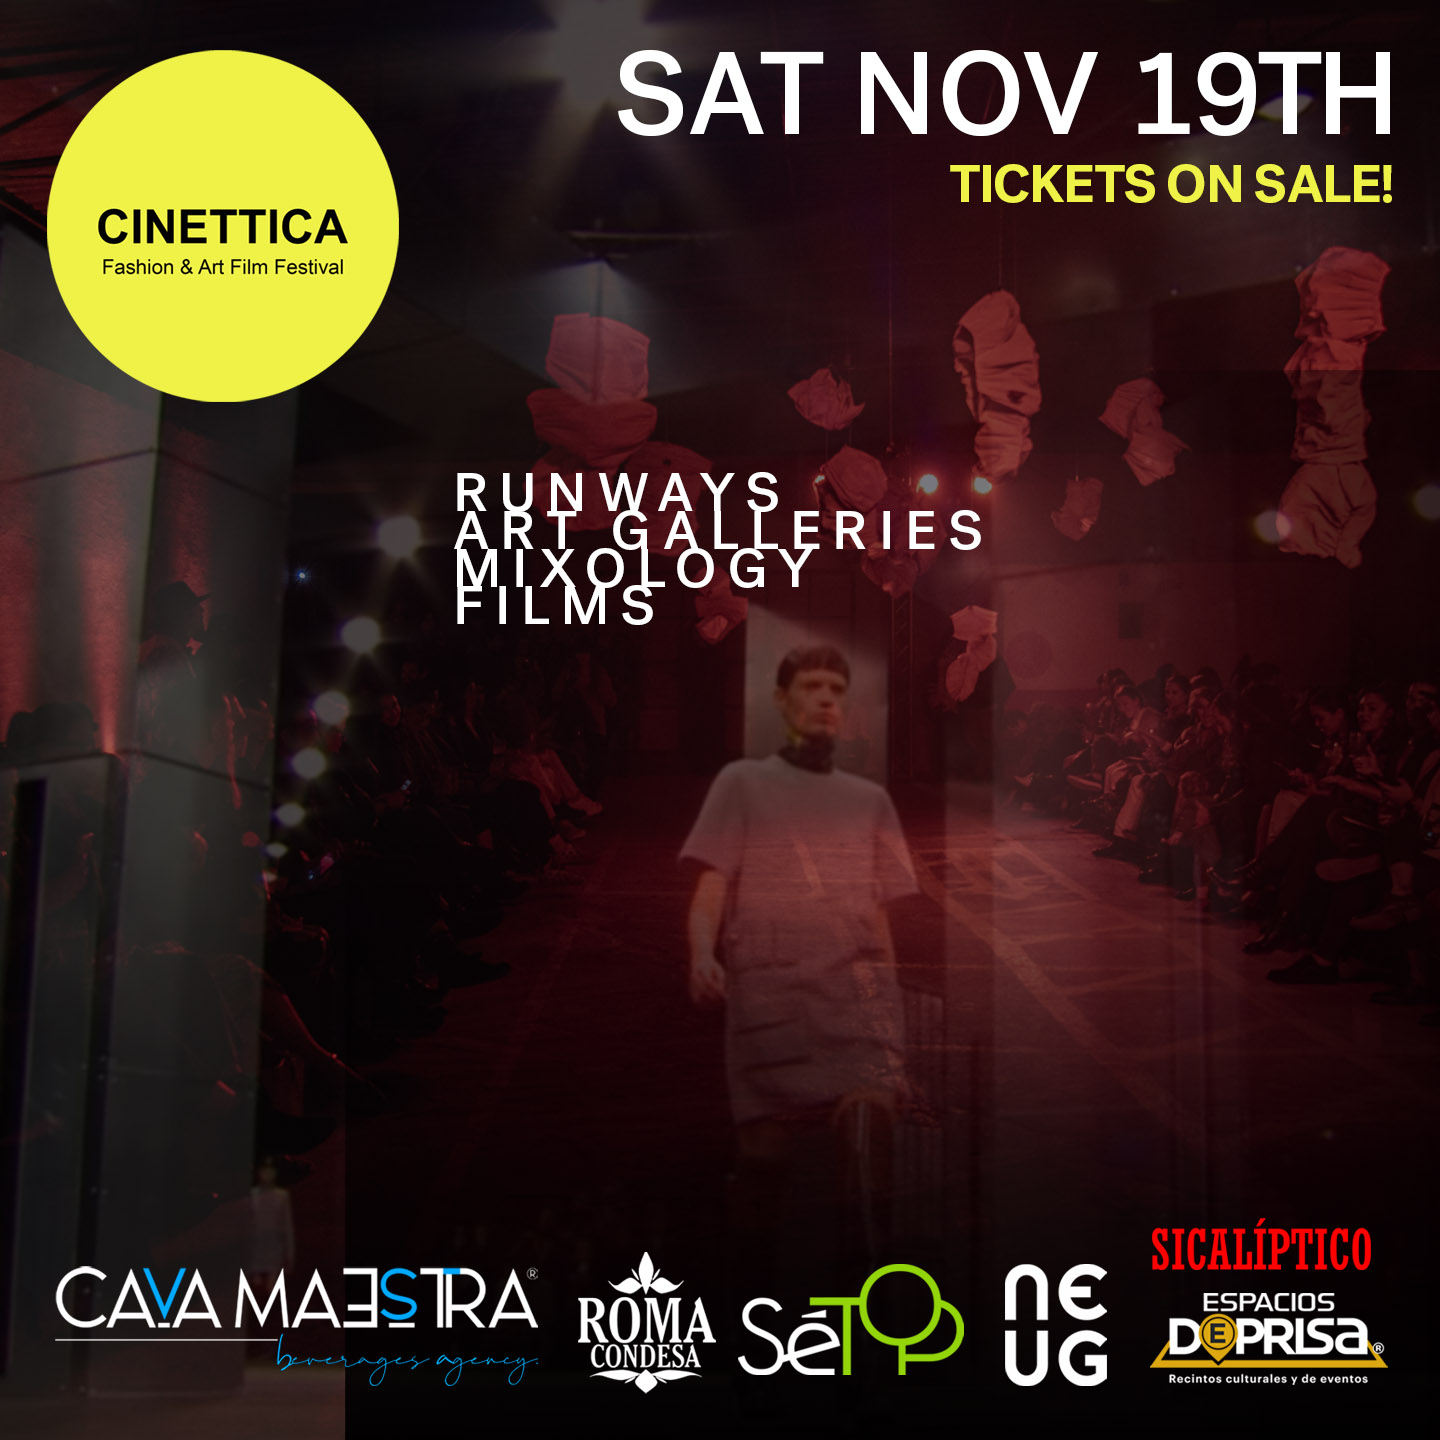 Cinettica el festival alternativo de Arte, Cine y Moda que nació en la escena de Manhattan presentará su quinta edición 19 de Noviembre en la CDMX.